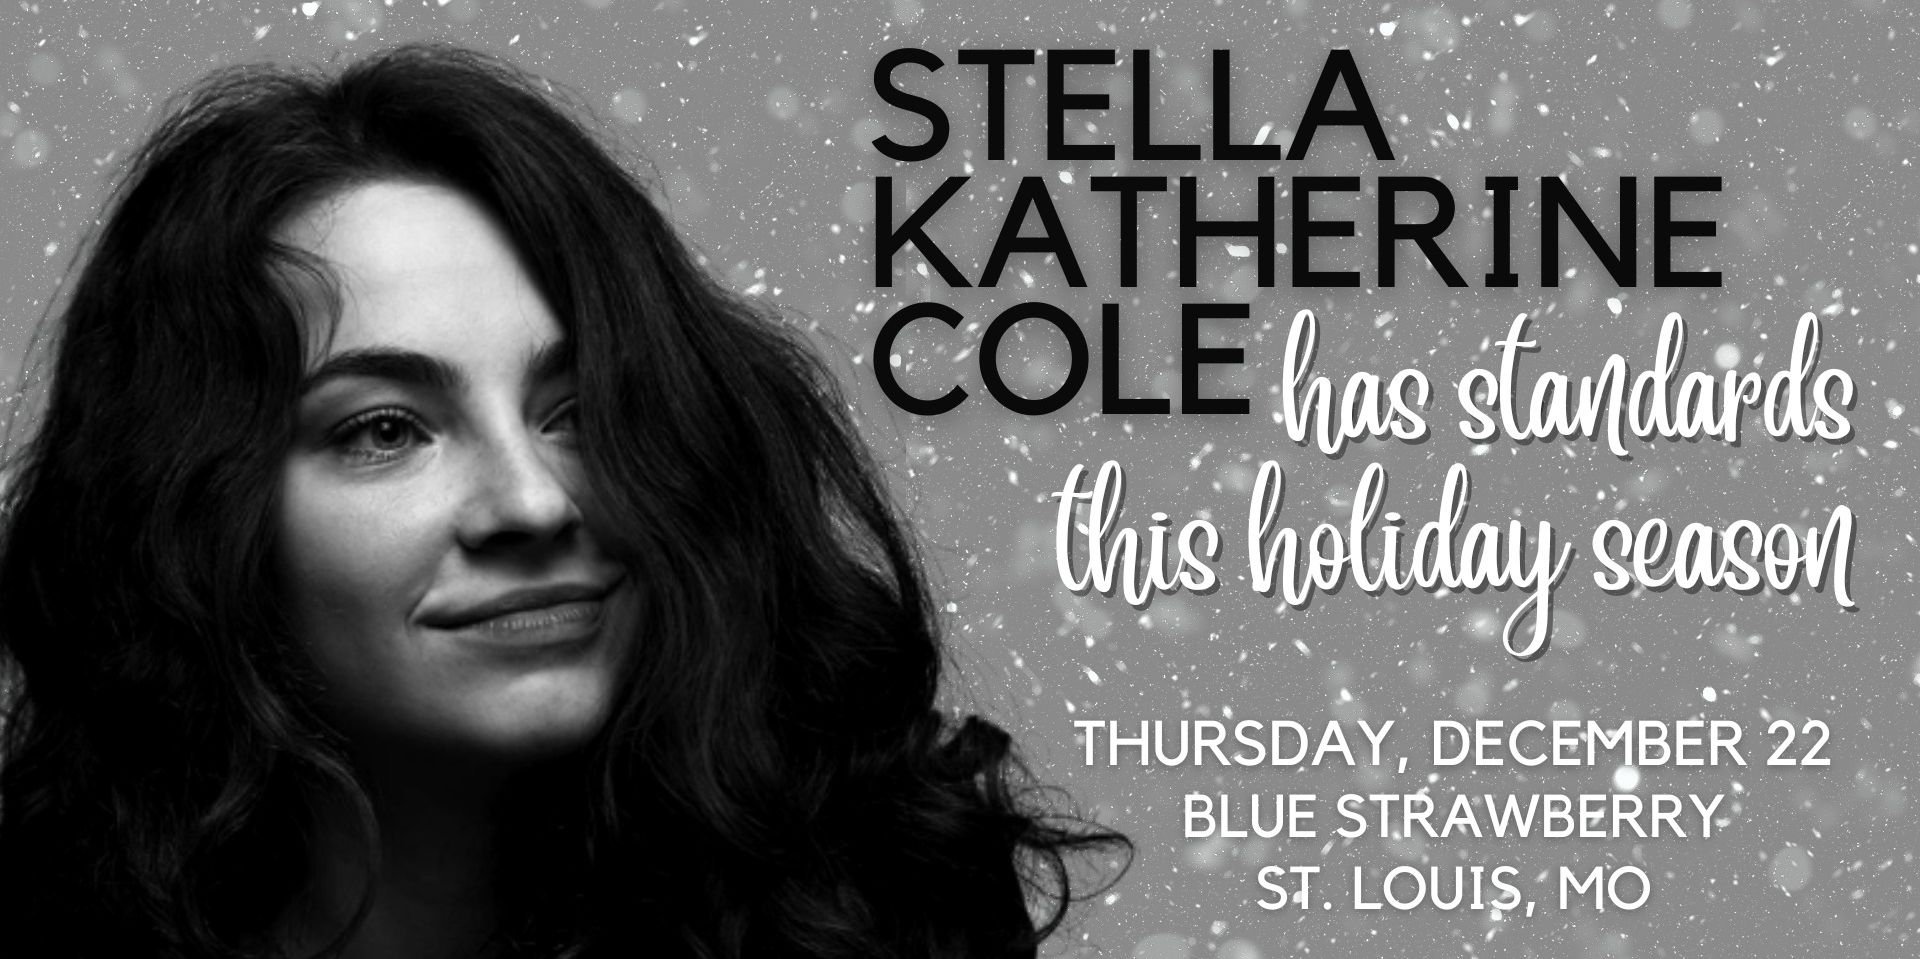 Stella Katherine Cole promotional image